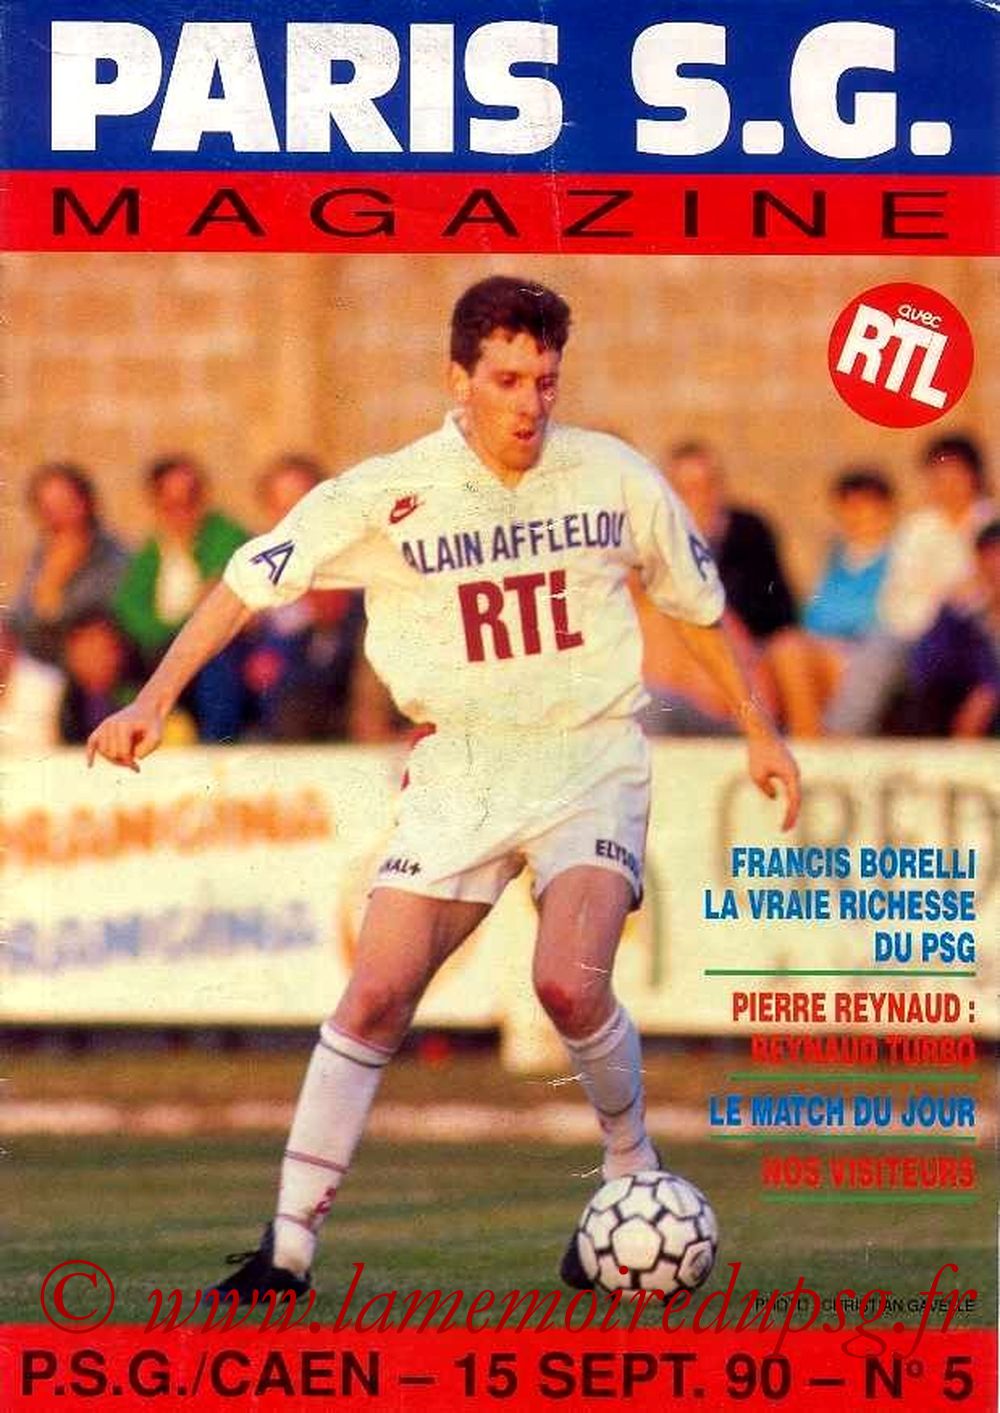 1990-09-15  PSG-Caen (9ème D1, Paris SG Magazine N°5)